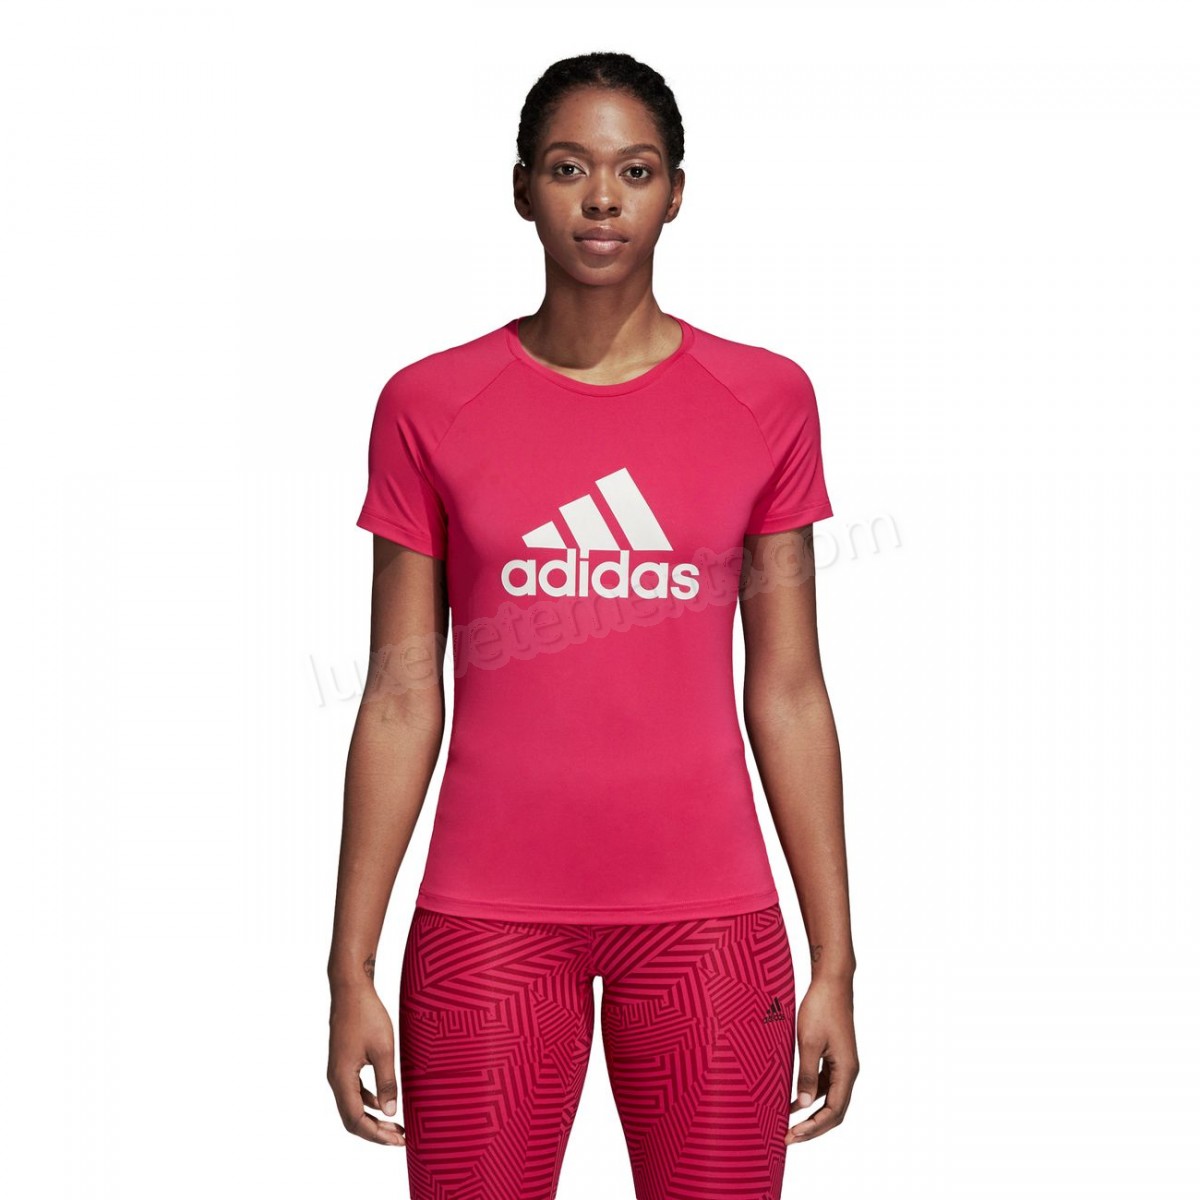 Adidas-Fitness femme ADIDAS Adidas Design 2 Move Logo Vente en ligne - -15